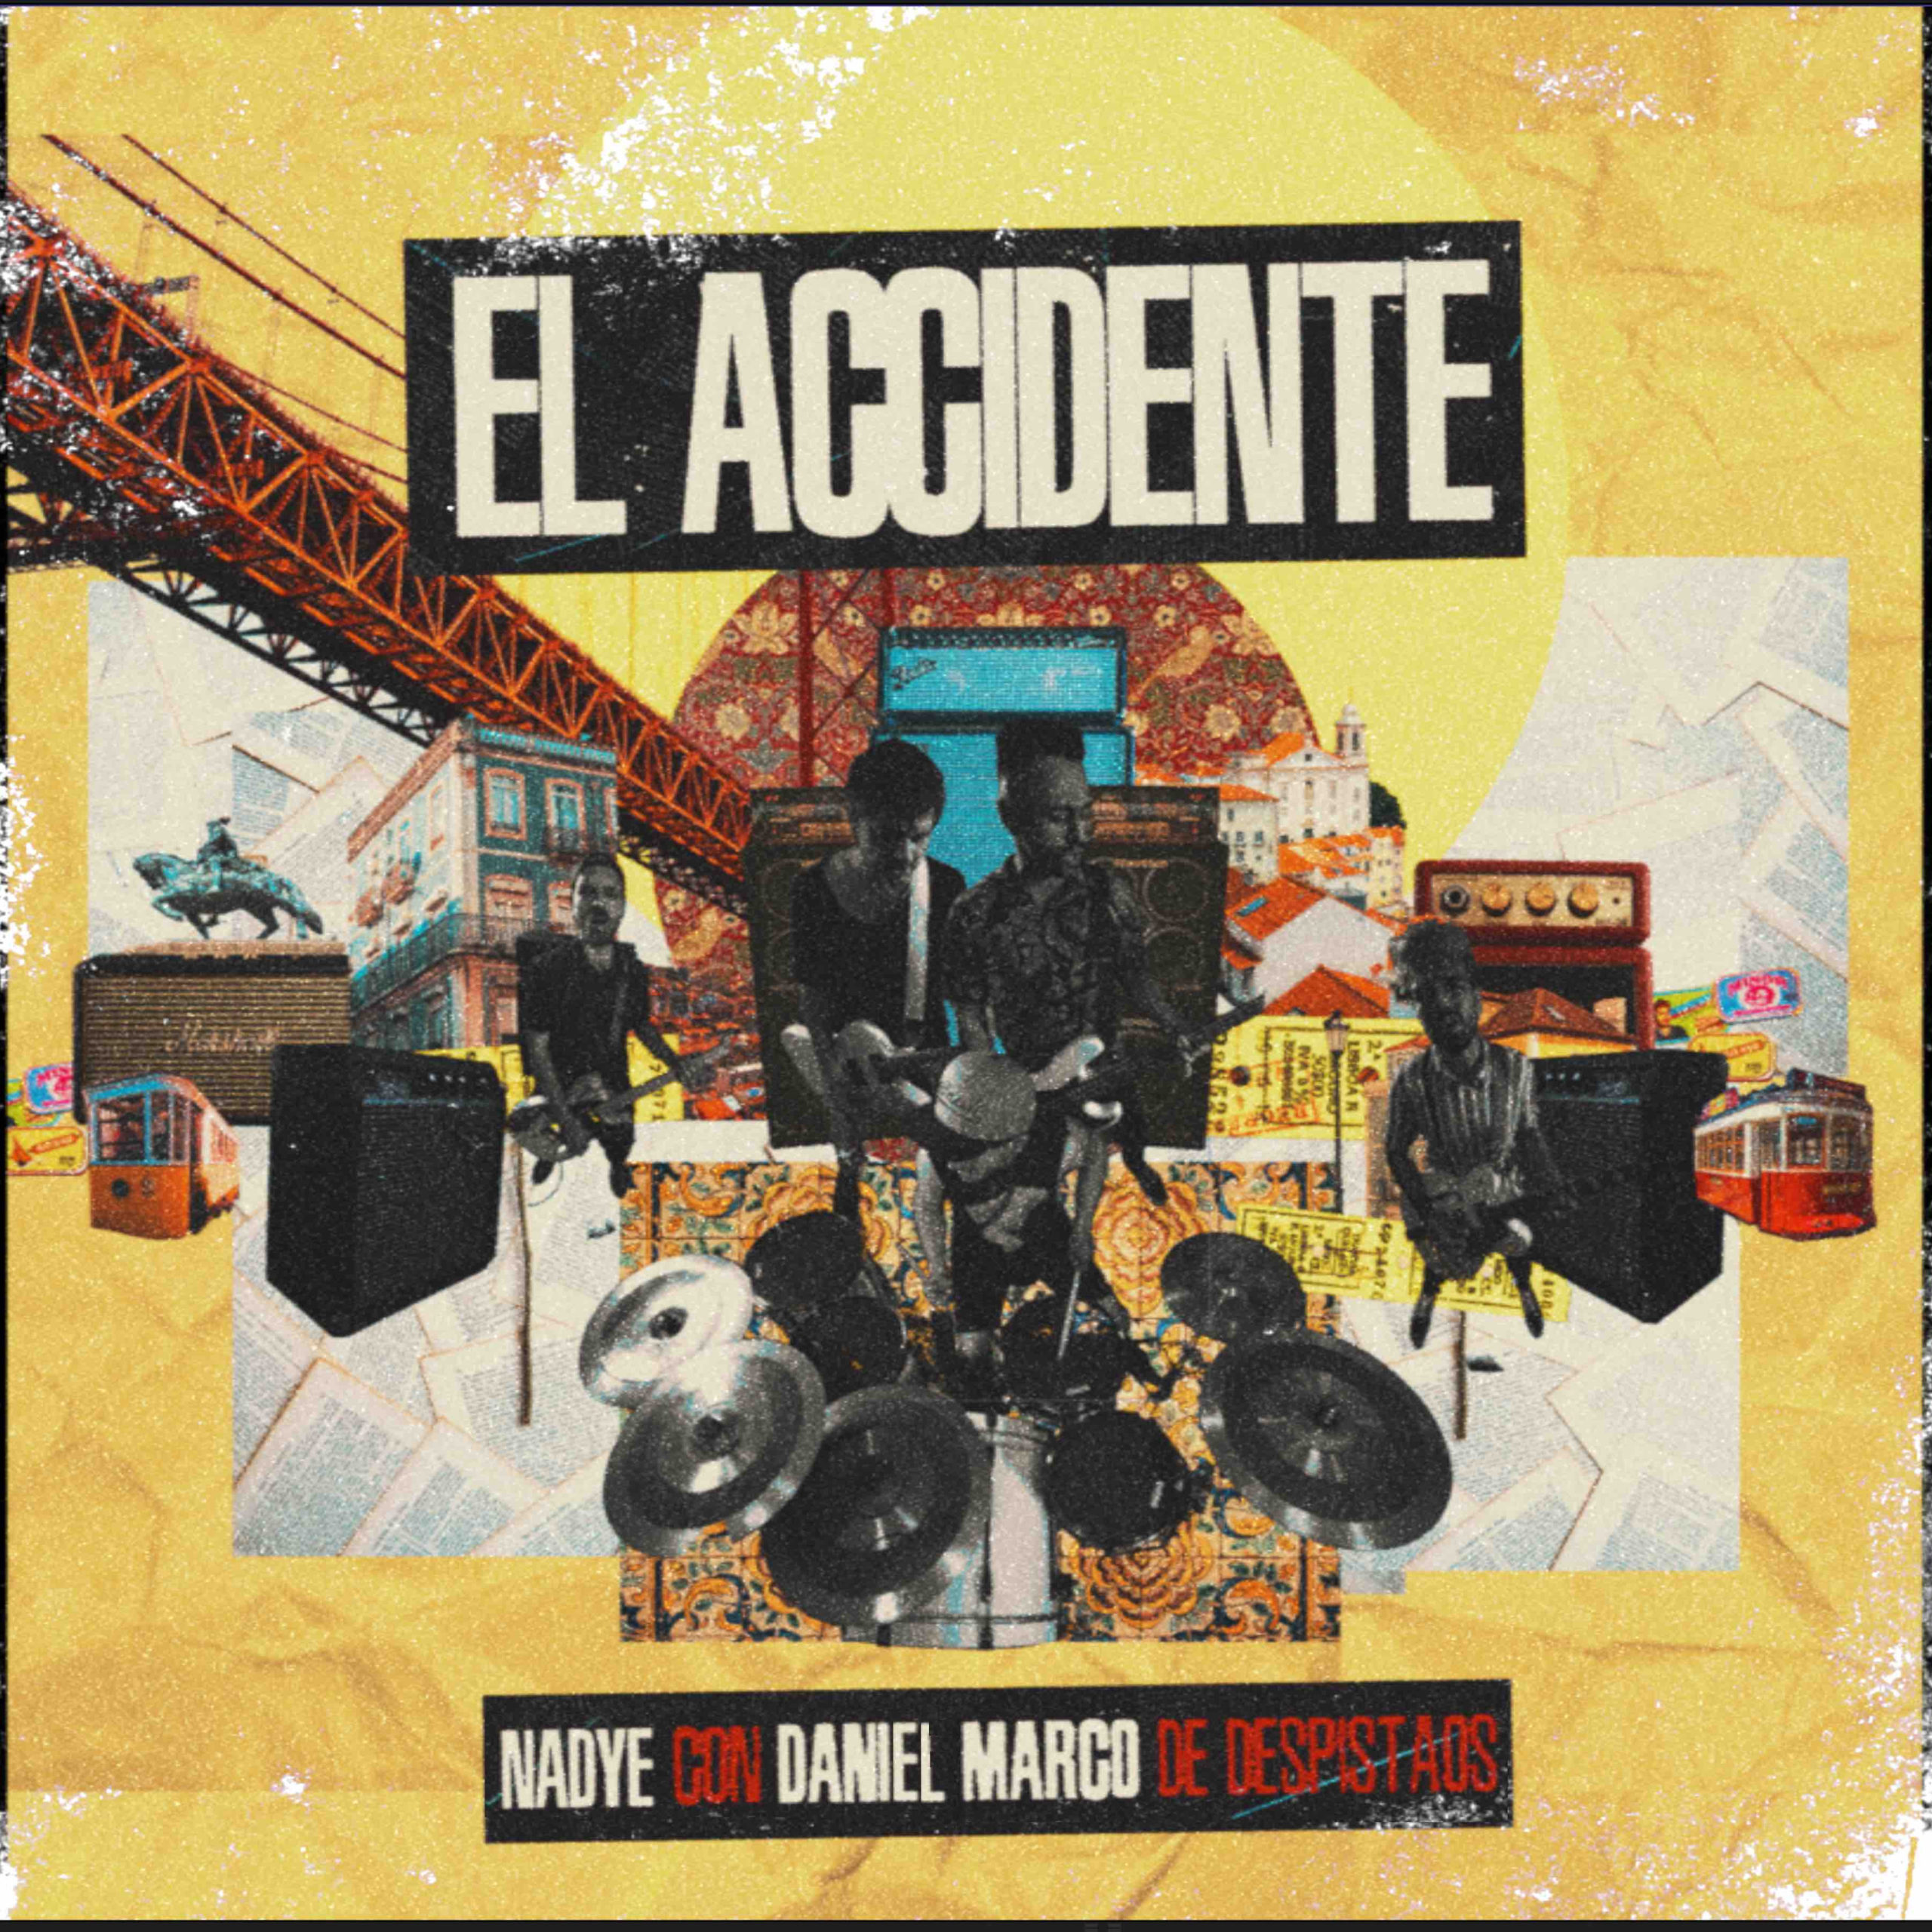 Nadye tienen nueva canción- El Accidente – con Dani Marco (Despistaos)